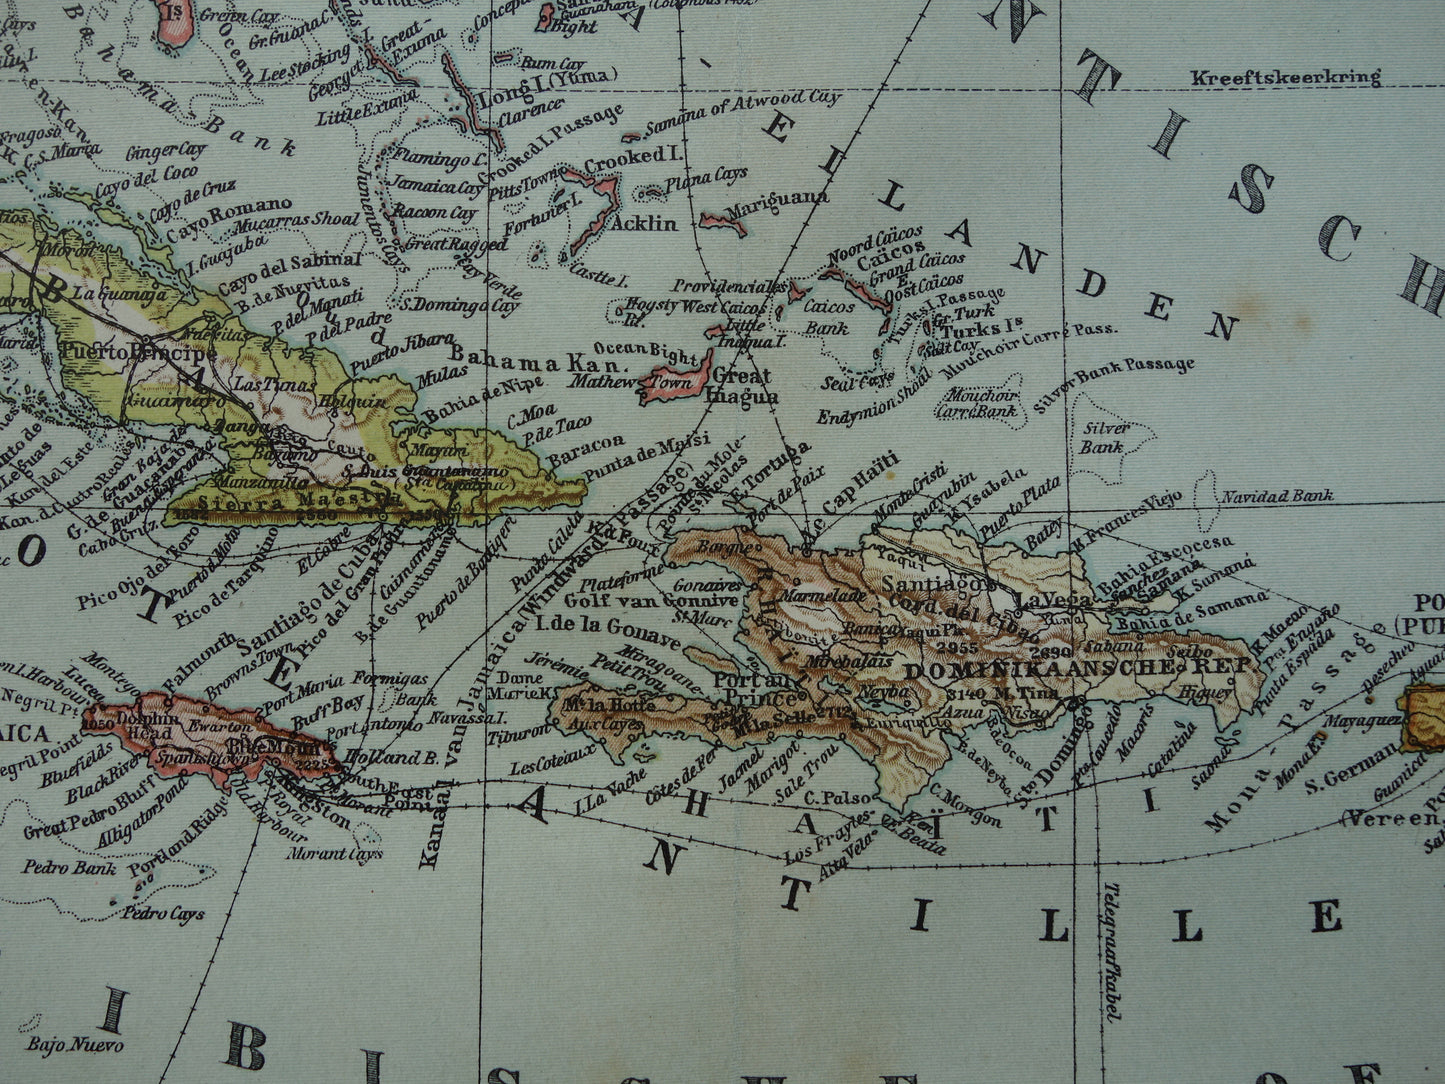 Oude kaart van het Caraïbisch gebied 1905 originele antieke landkaart Caraïben Antillen Caraïbische eilanden te koop Cuba Aruba Curacao